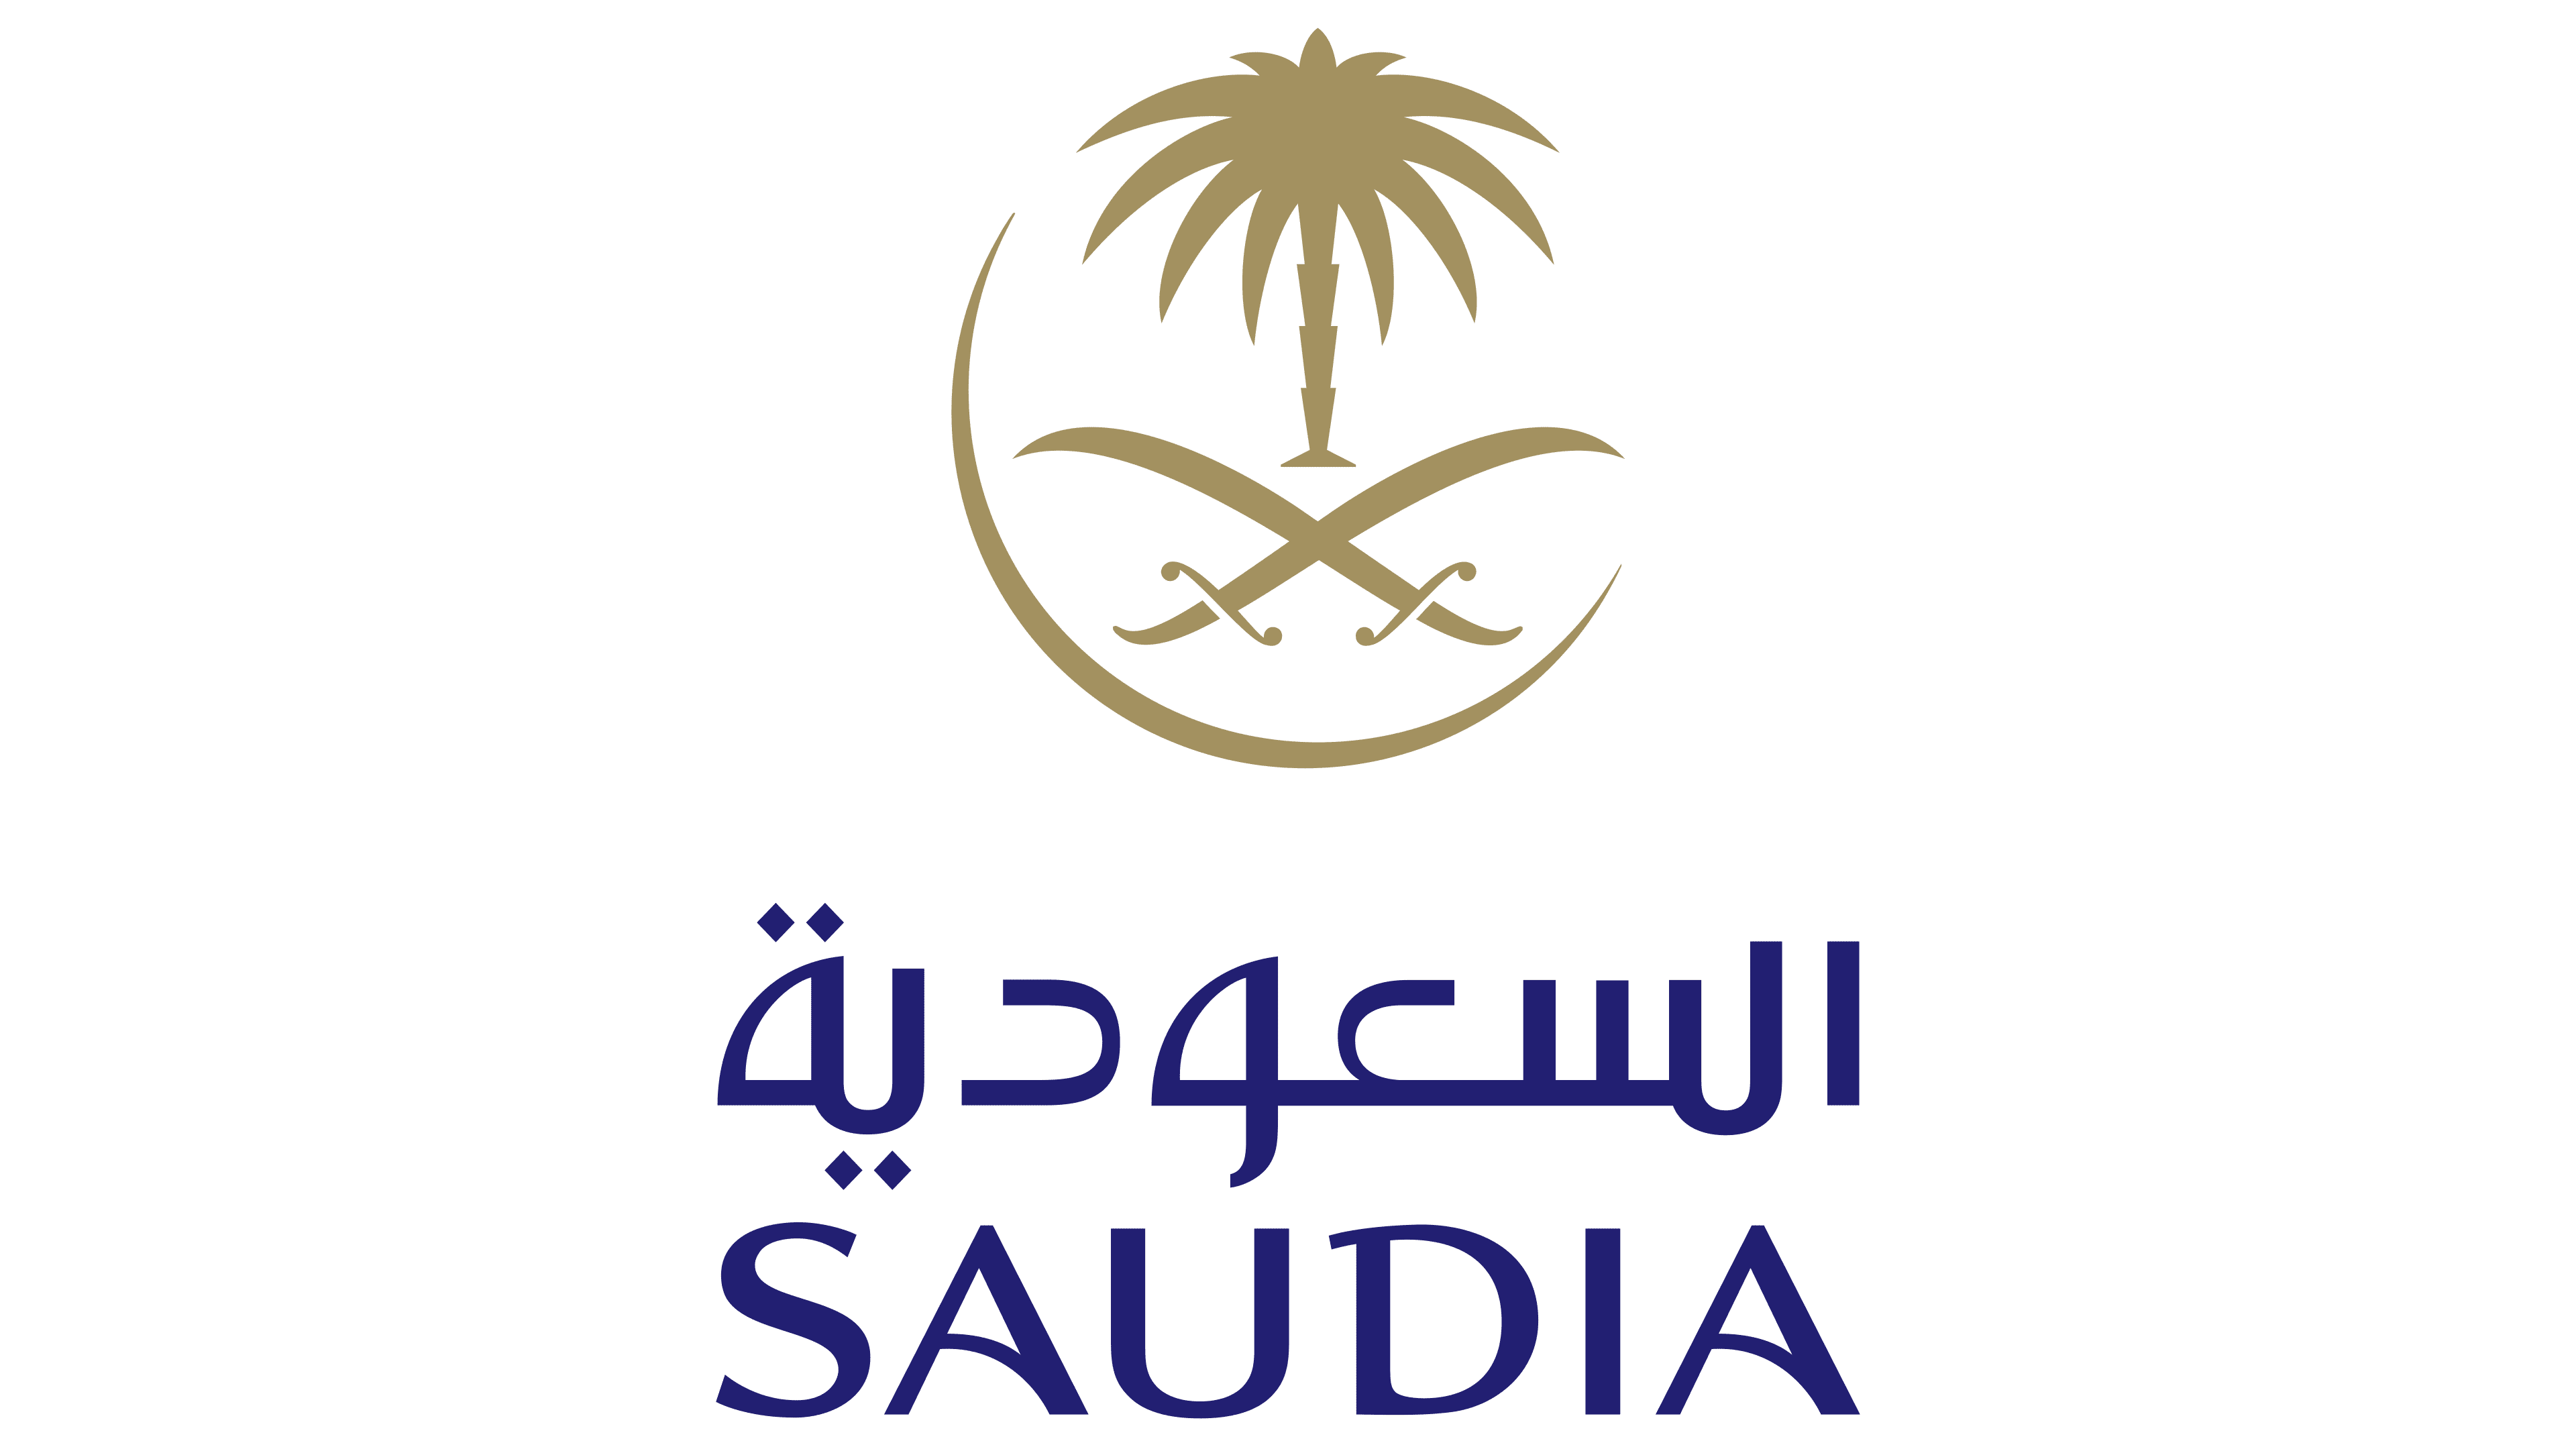 Saudi Arabia airlines logo.